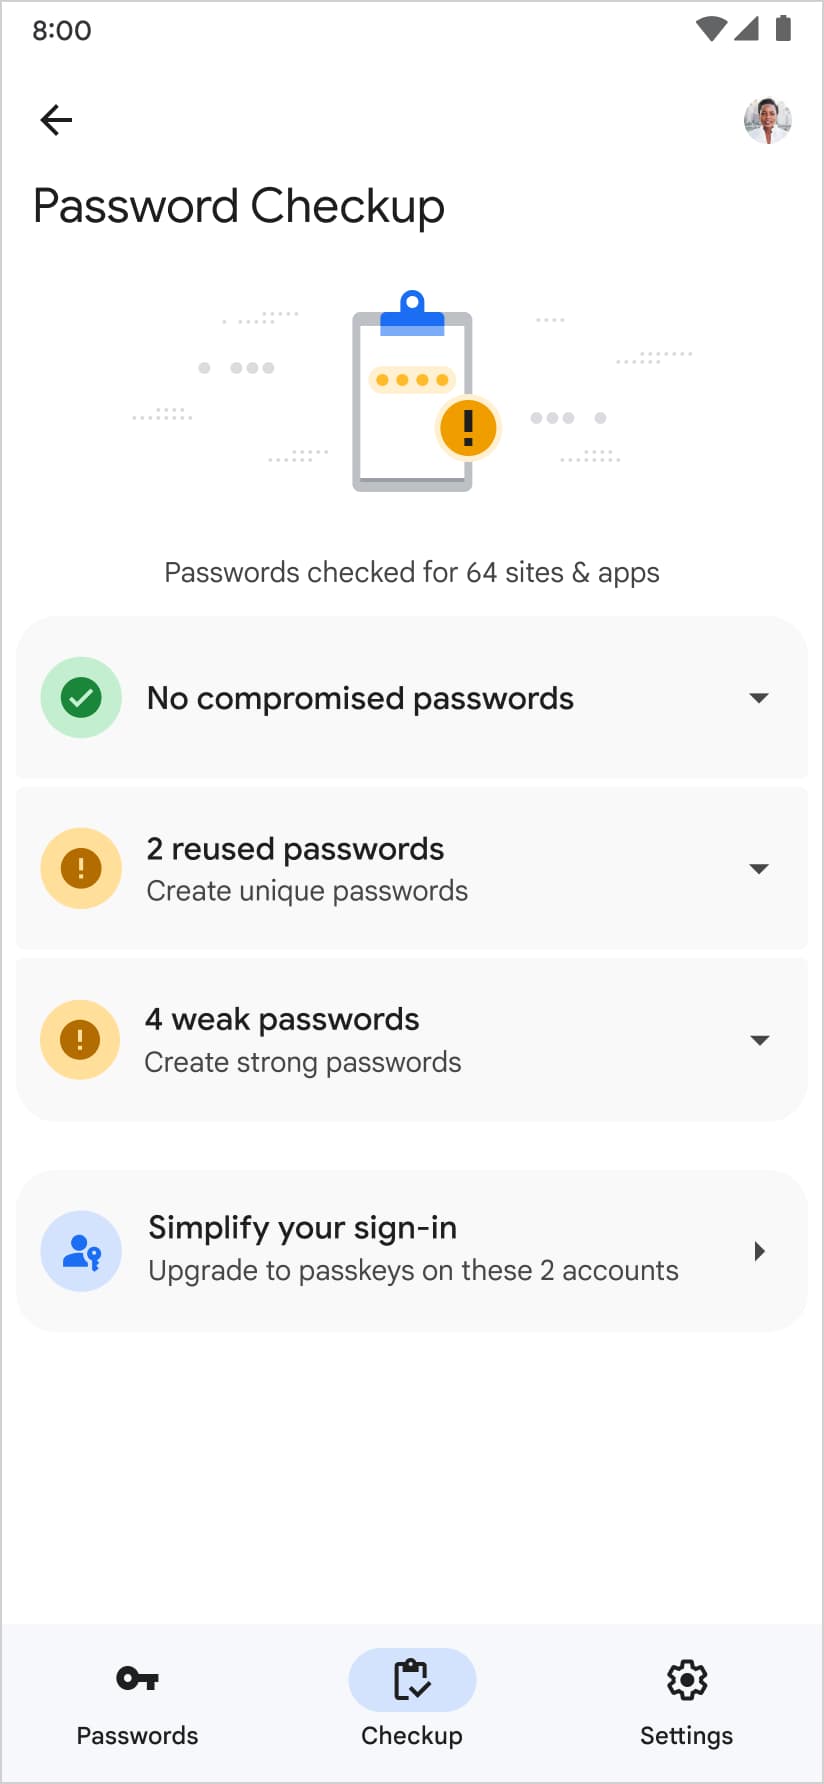 Google Password Manager, पासवर्ड चेकअप पेज पर एक पासकी बनाने का भी सुझाव देता है.